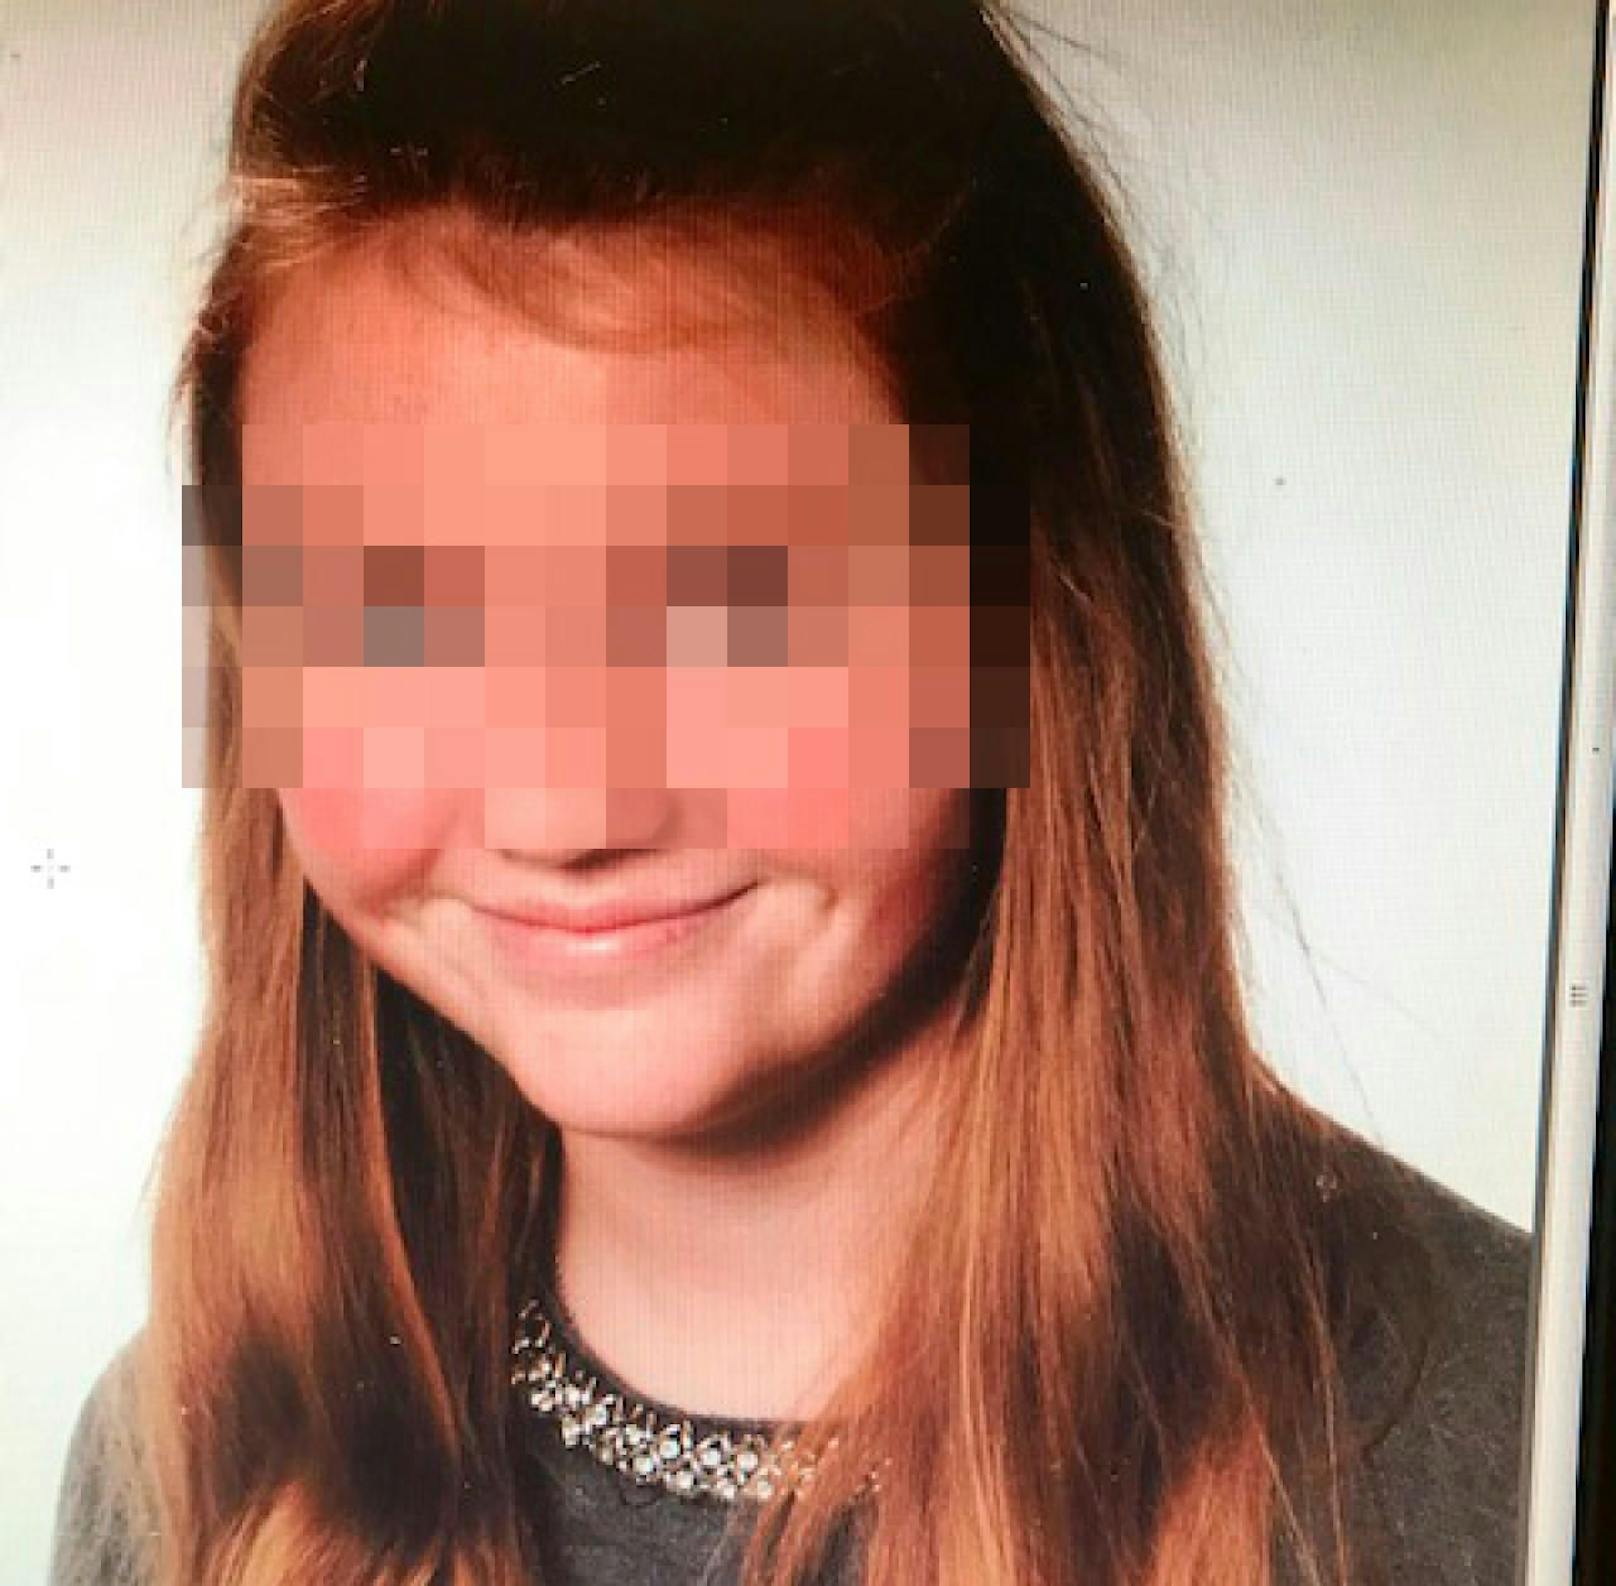 Die 15-Jährige wurde seit dem 1. Mai 2019 vermisst.